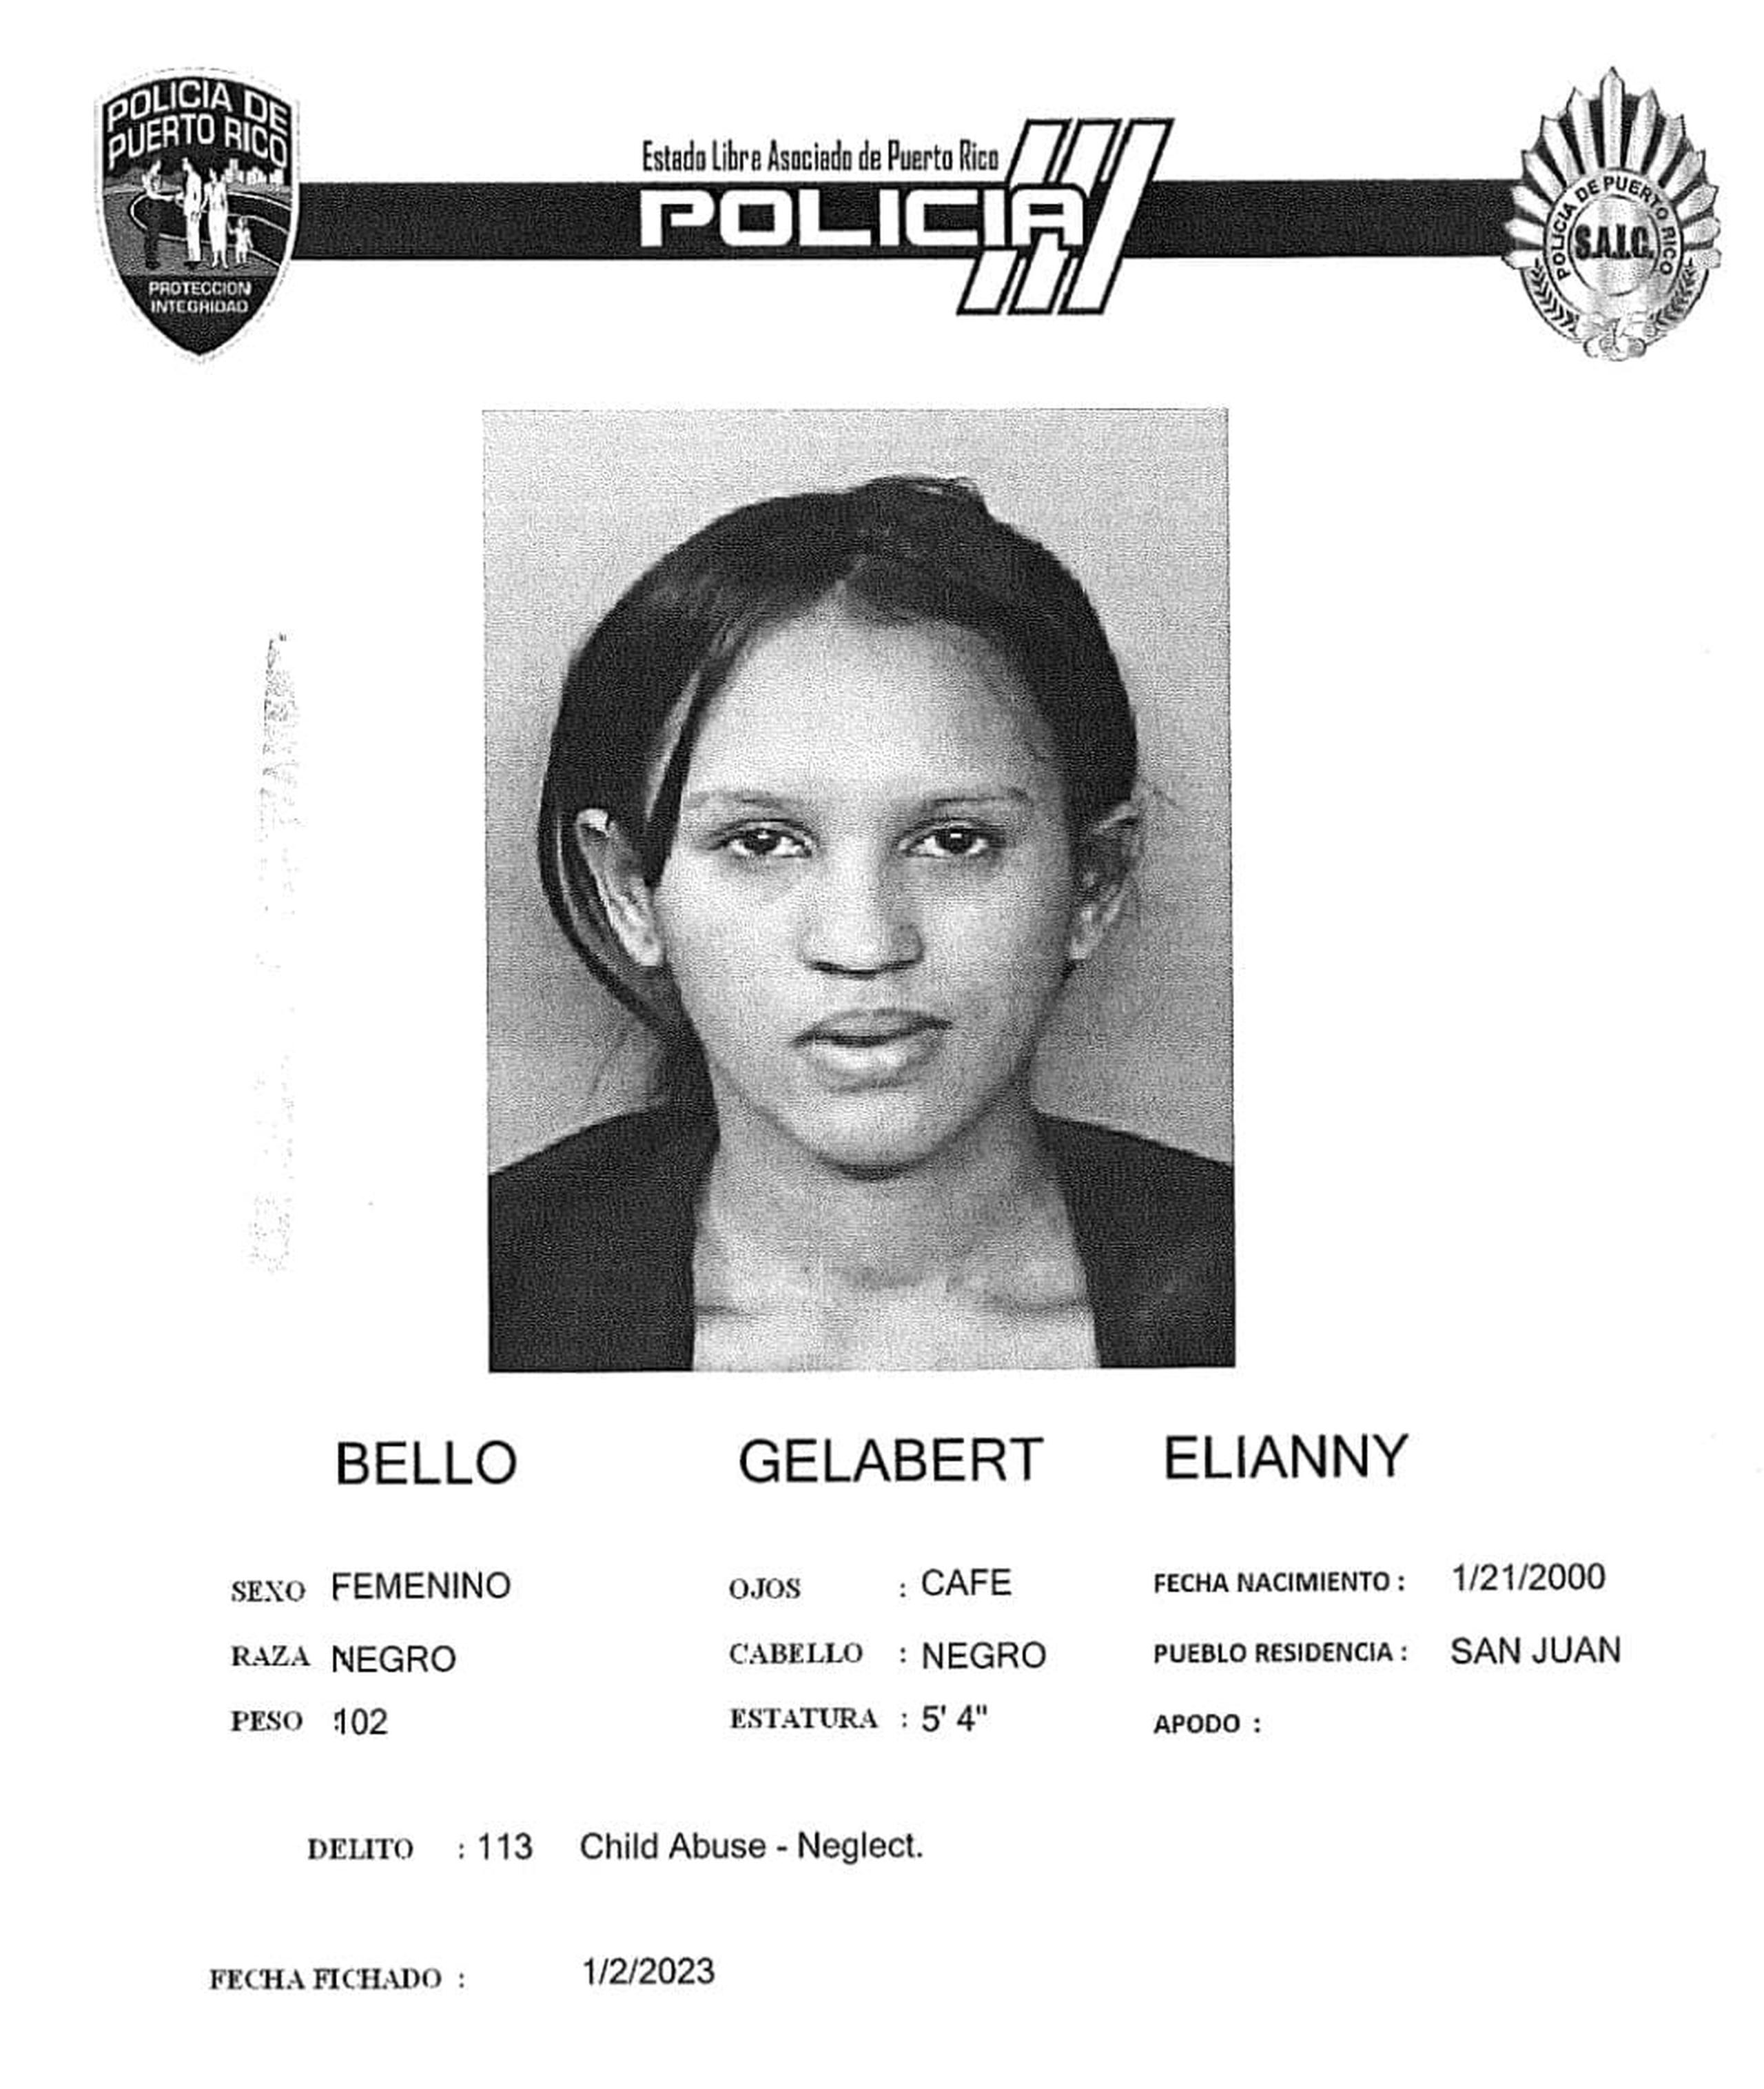 Elianny Bello Gelabert de 22 años, enfrenta cargos por violencia de género y maltrato de menores.